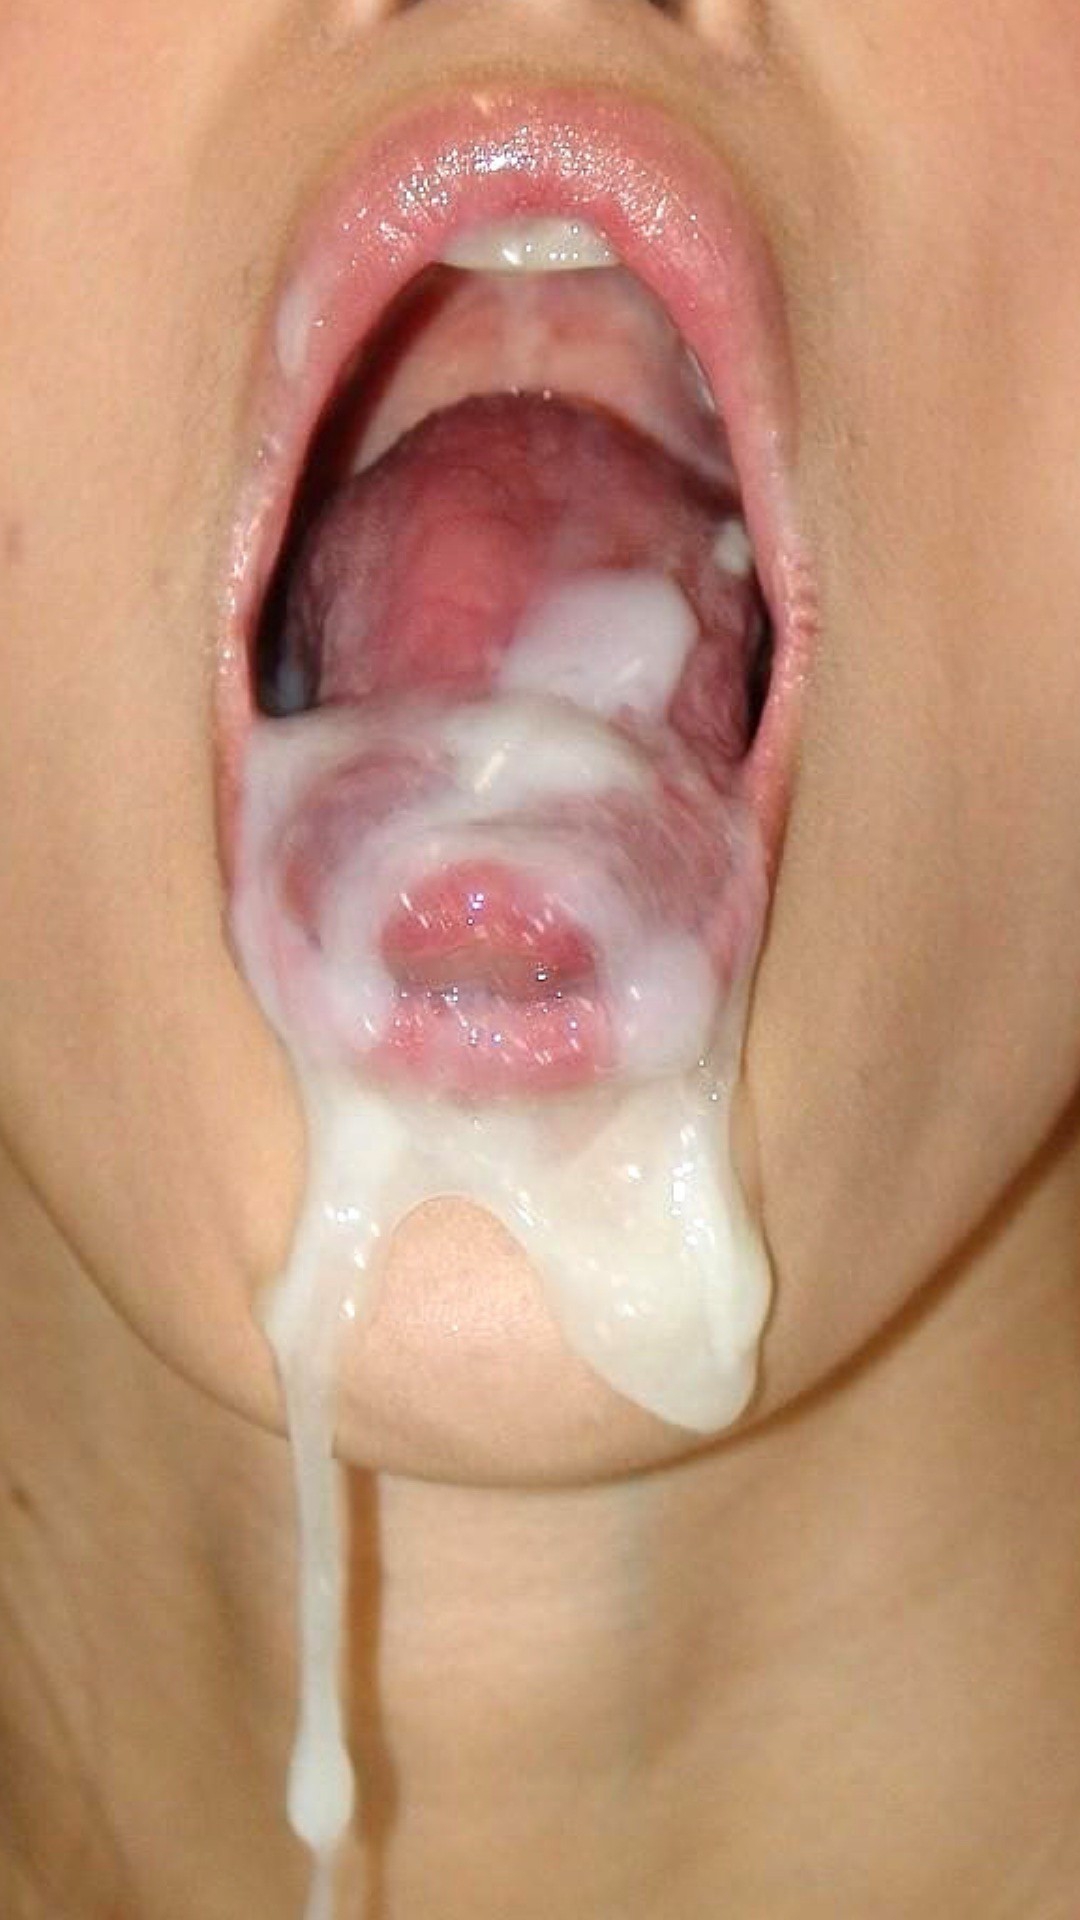 сперма вытекает изо рта девушки фото 72